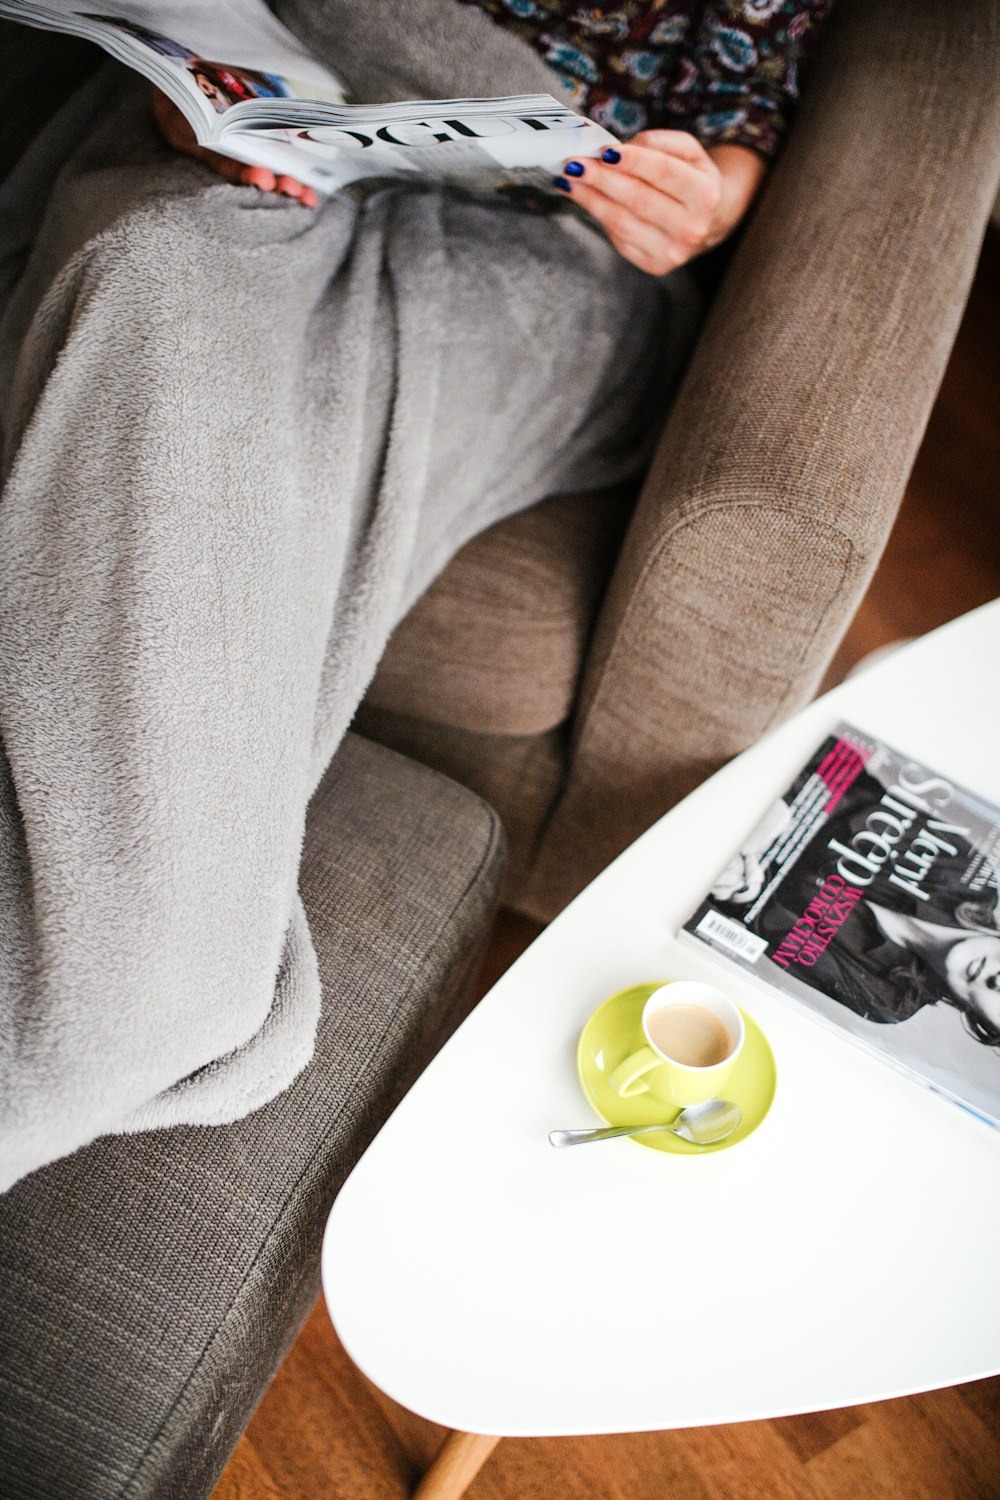 채워진 녹색 세라믹 커피 컵 옆에 잡지를 읽는 여자